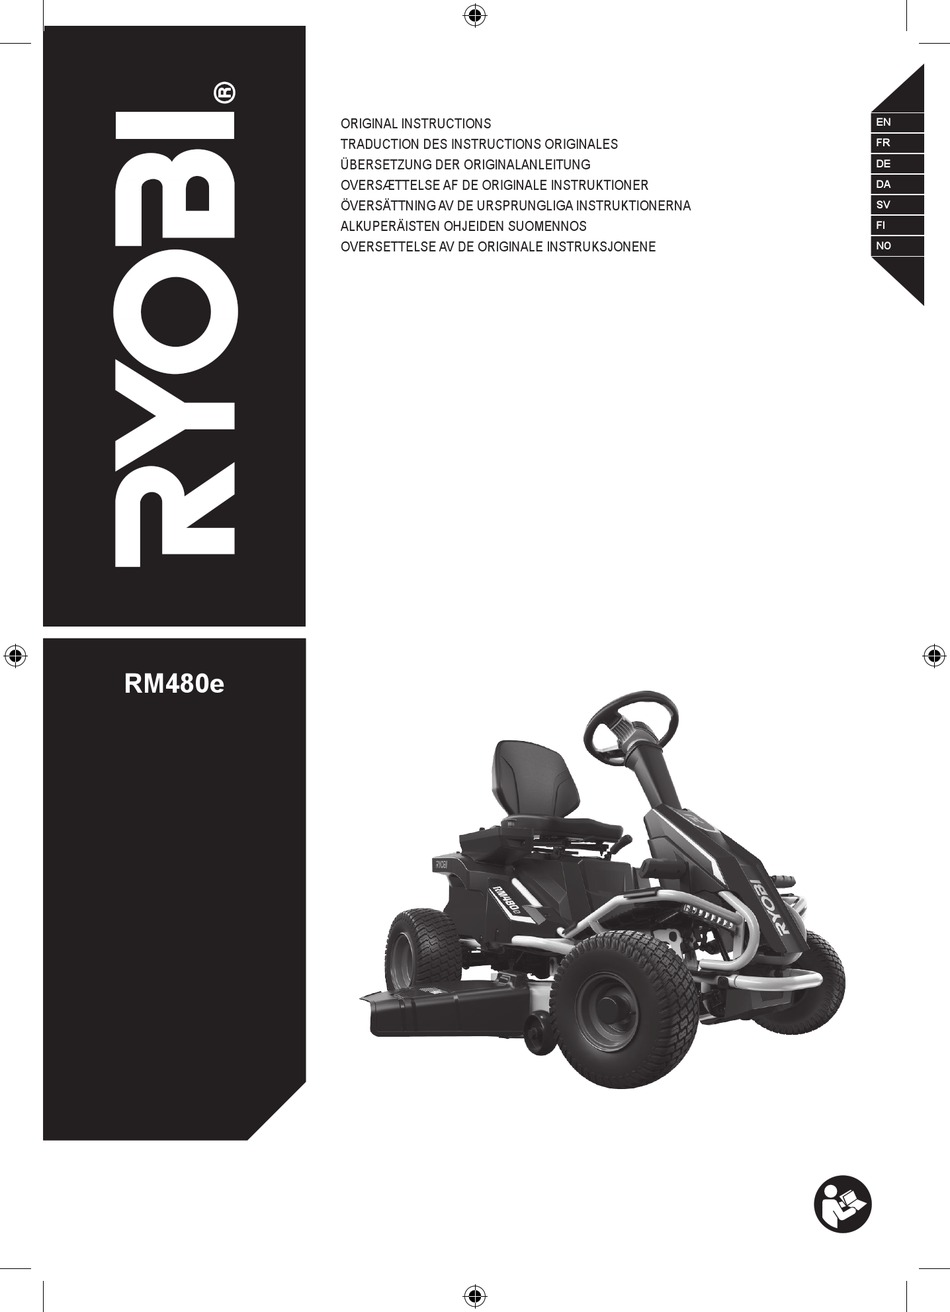 Ryobi Rm480e Original Instructions Manual Pdf Download Manualslib